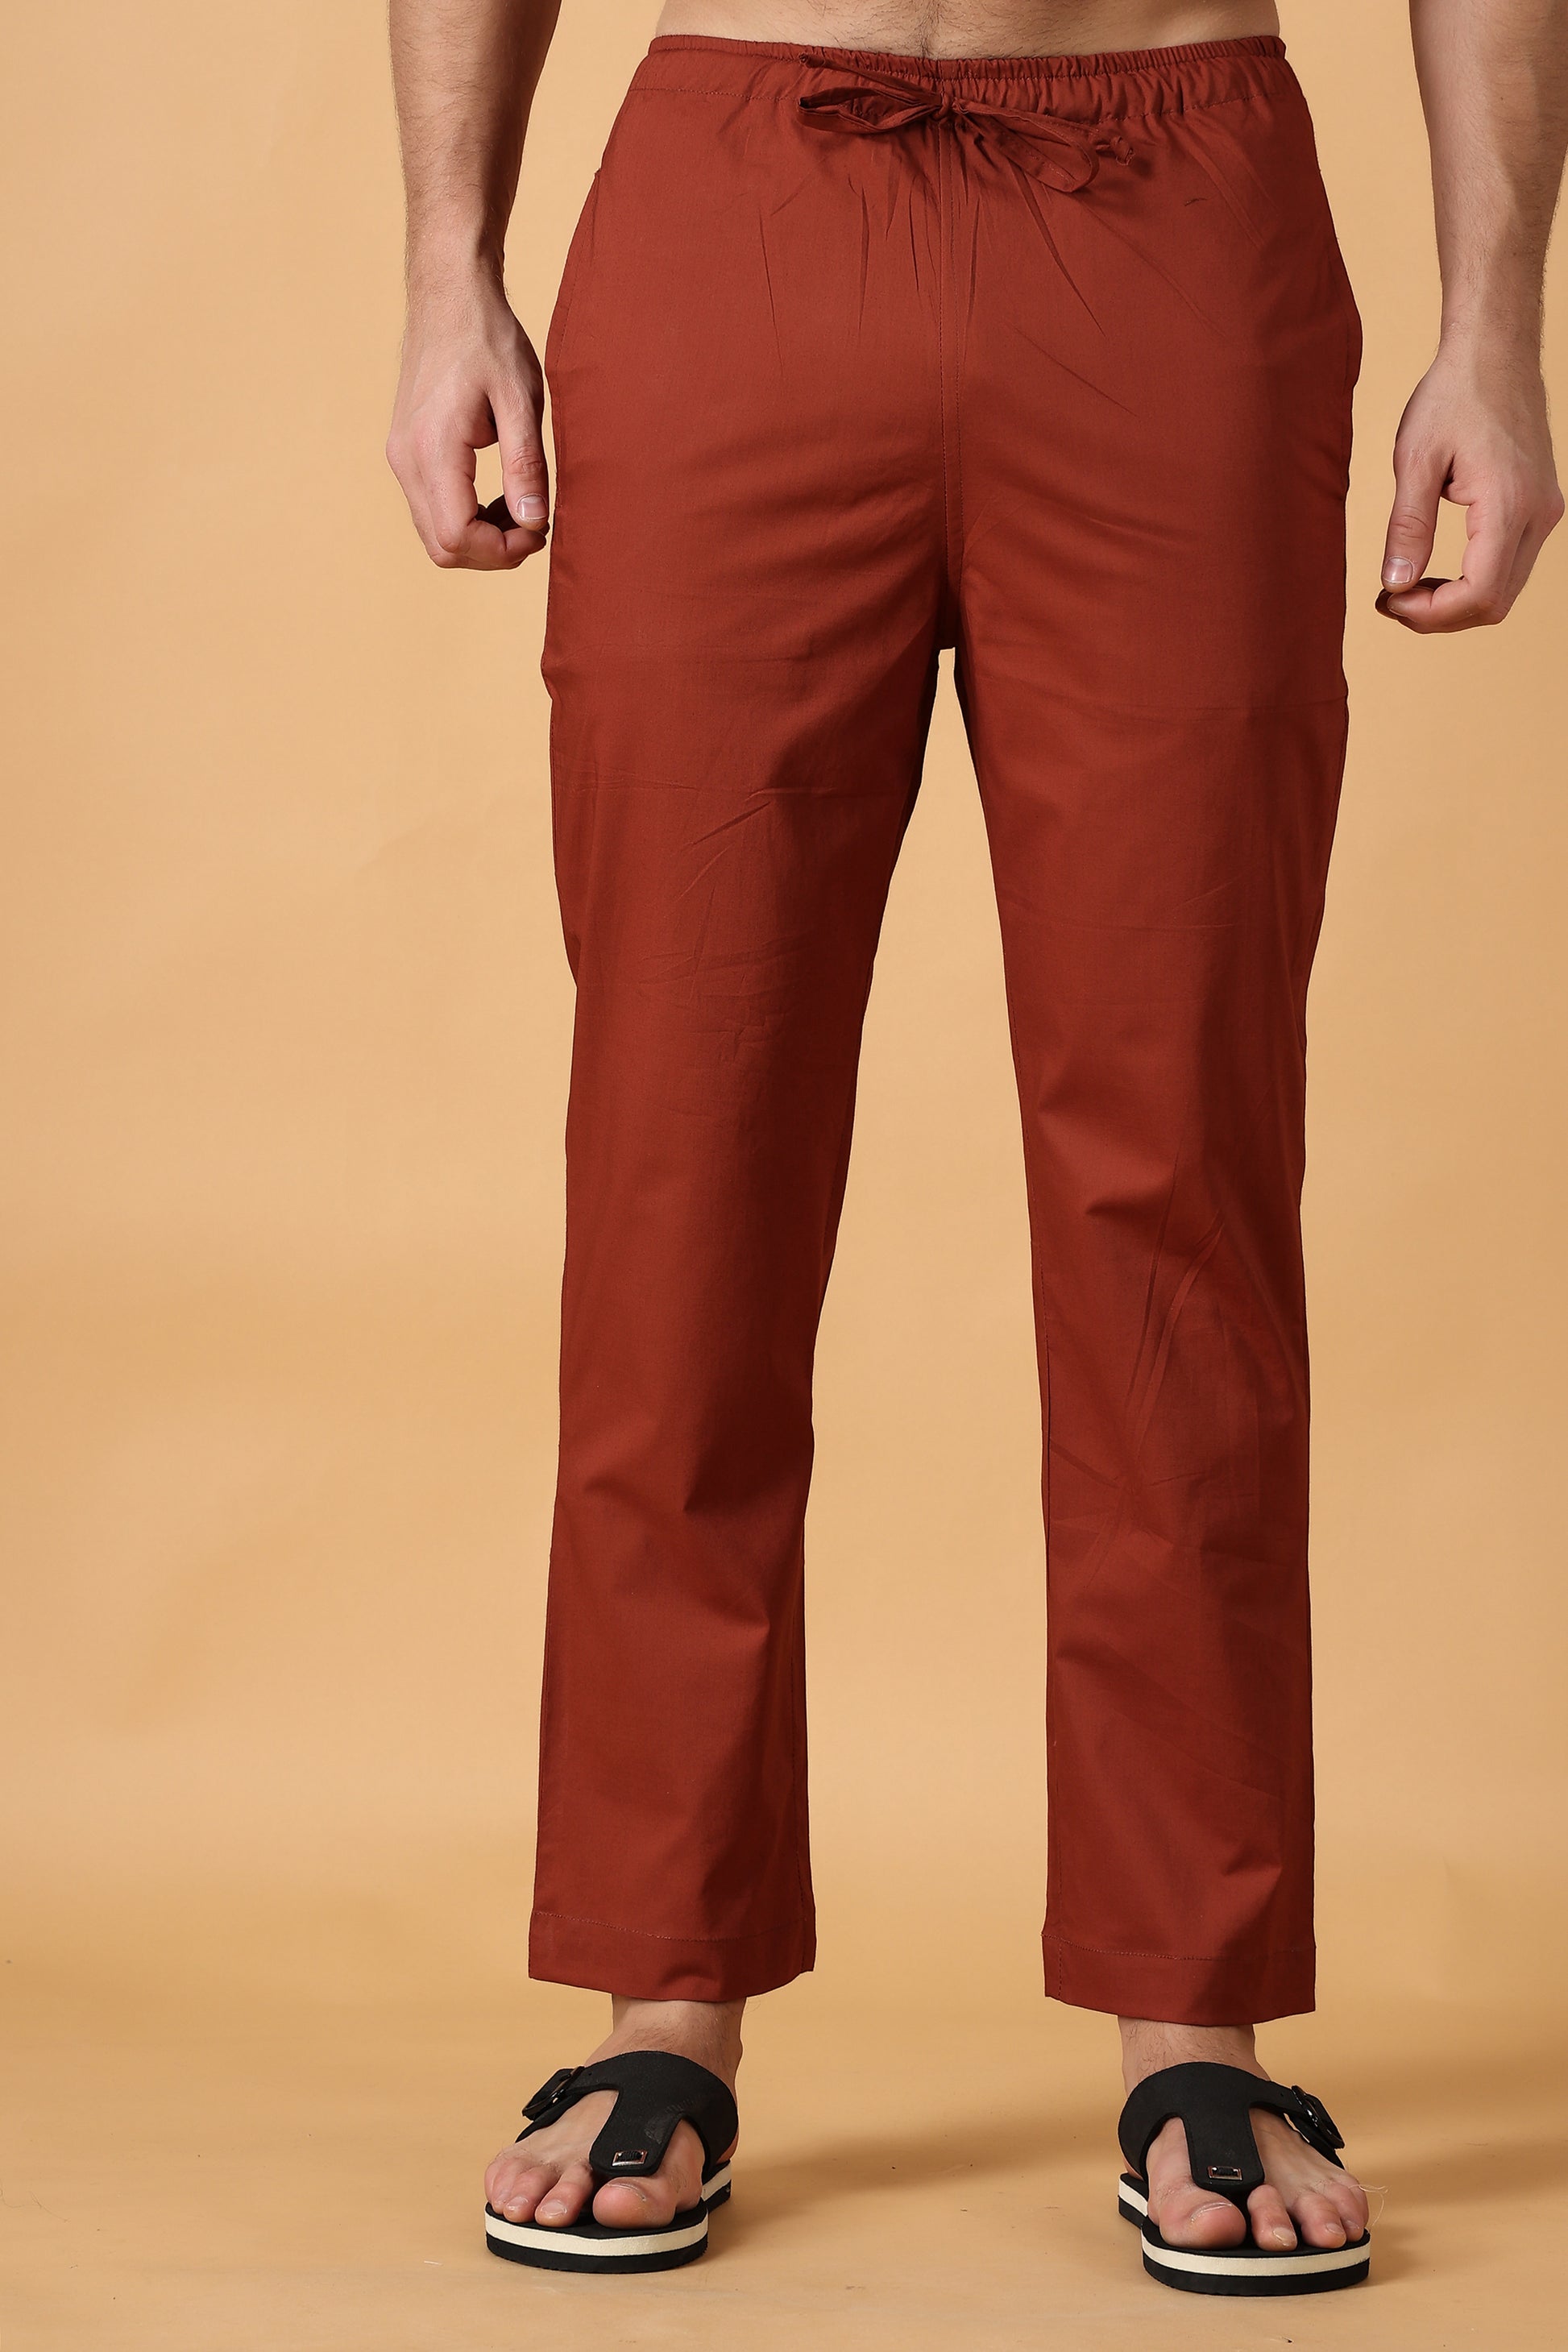 Men's Plus Size Rust Cotton Pant Pajama | Apella